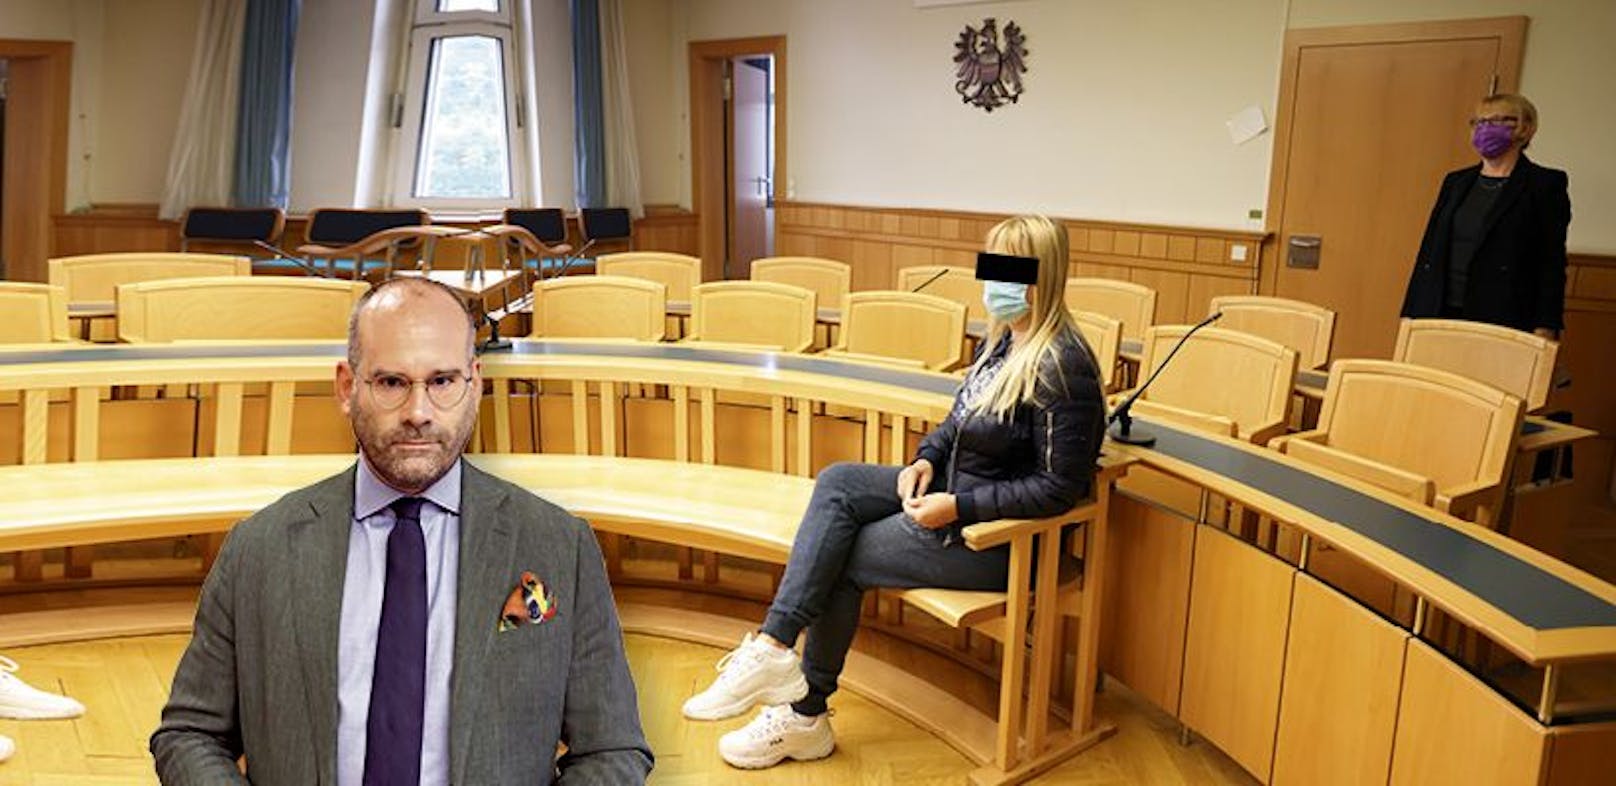 Anwalt Ainedter verteidigte die angeklagte Vereinsleiterin.